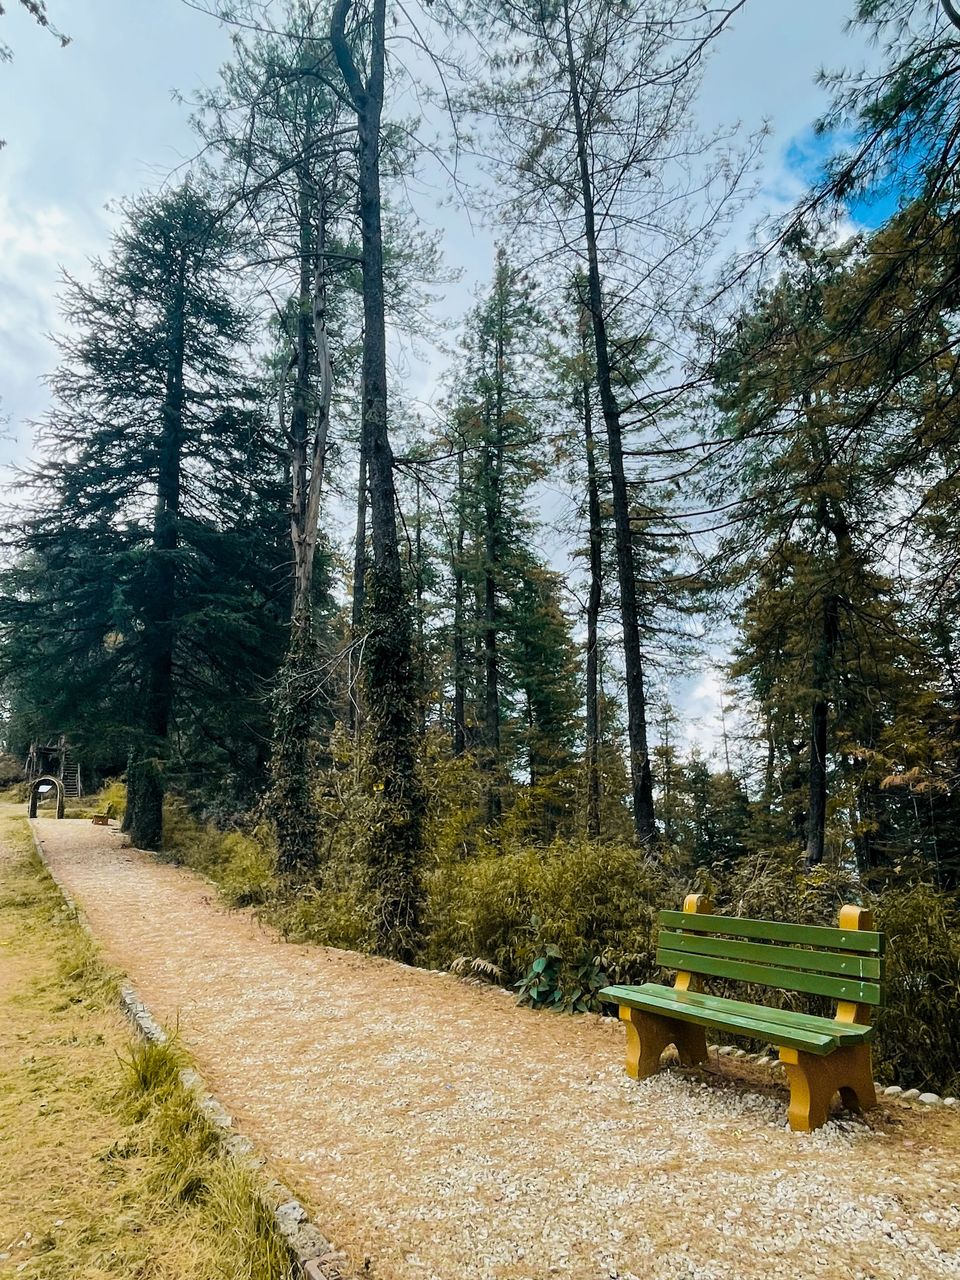 Photo of Mashobra, Shimla by Bongyatri - Sourav and Anindita